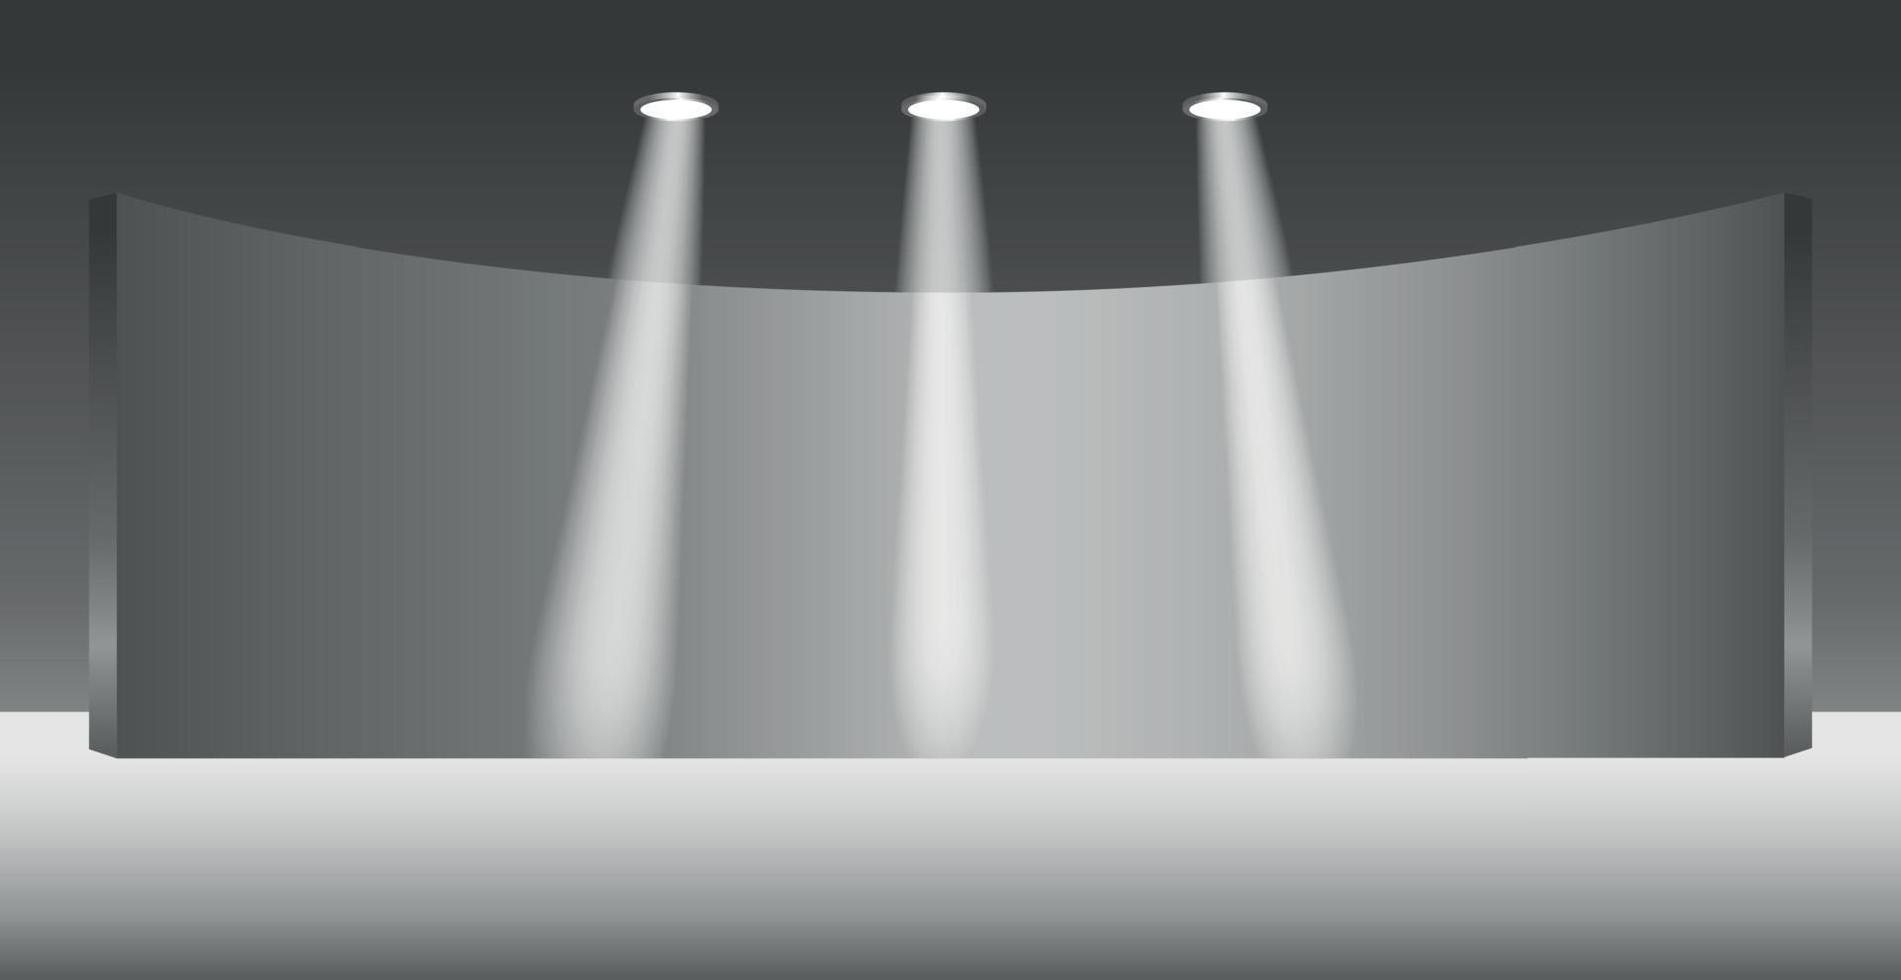 estudio de luz realista con iluminación de focos - vector